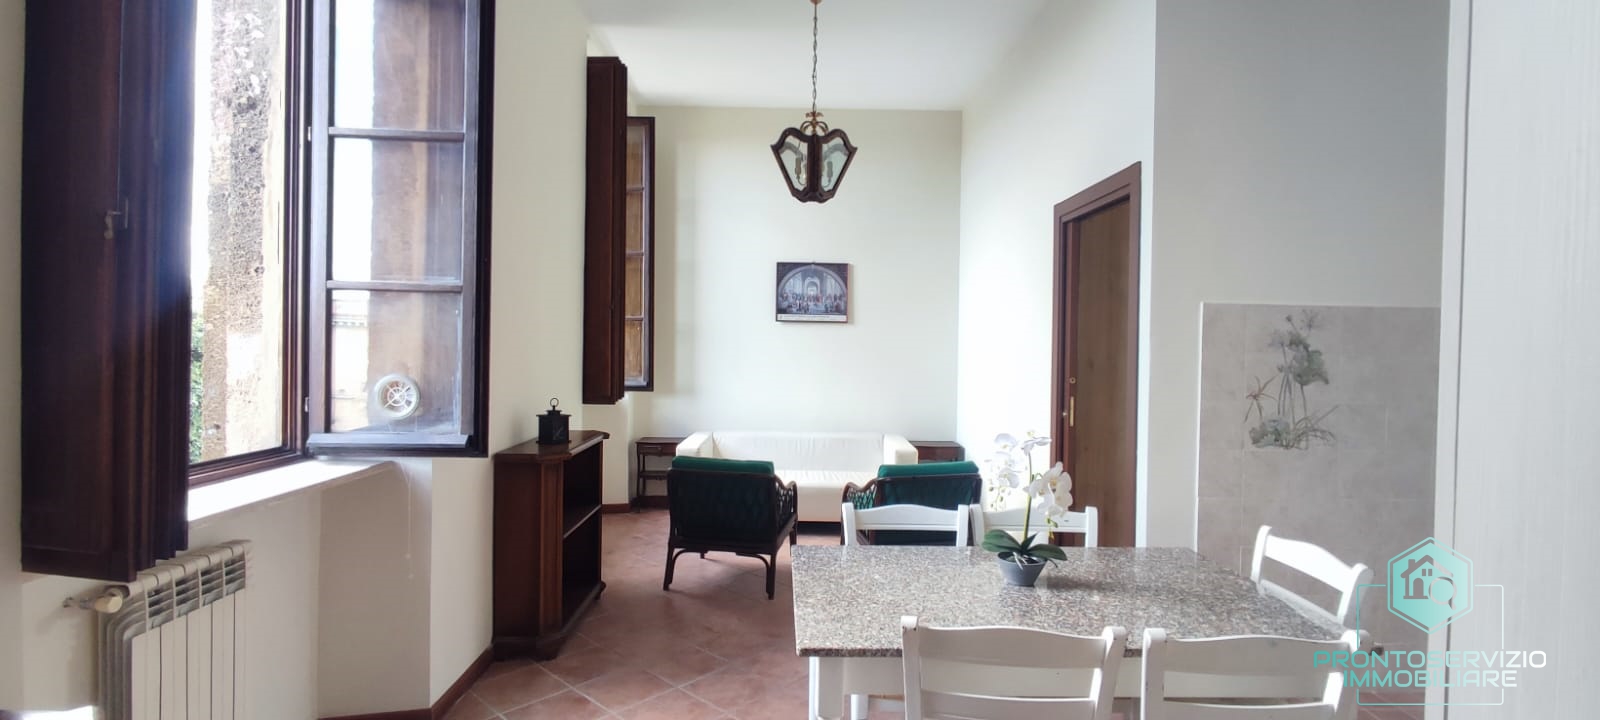 Appartamento in affitto a Monte Porzio Catone, 2 locali, prezzo € 600 | PortaleAgenzieImmobiliari.it